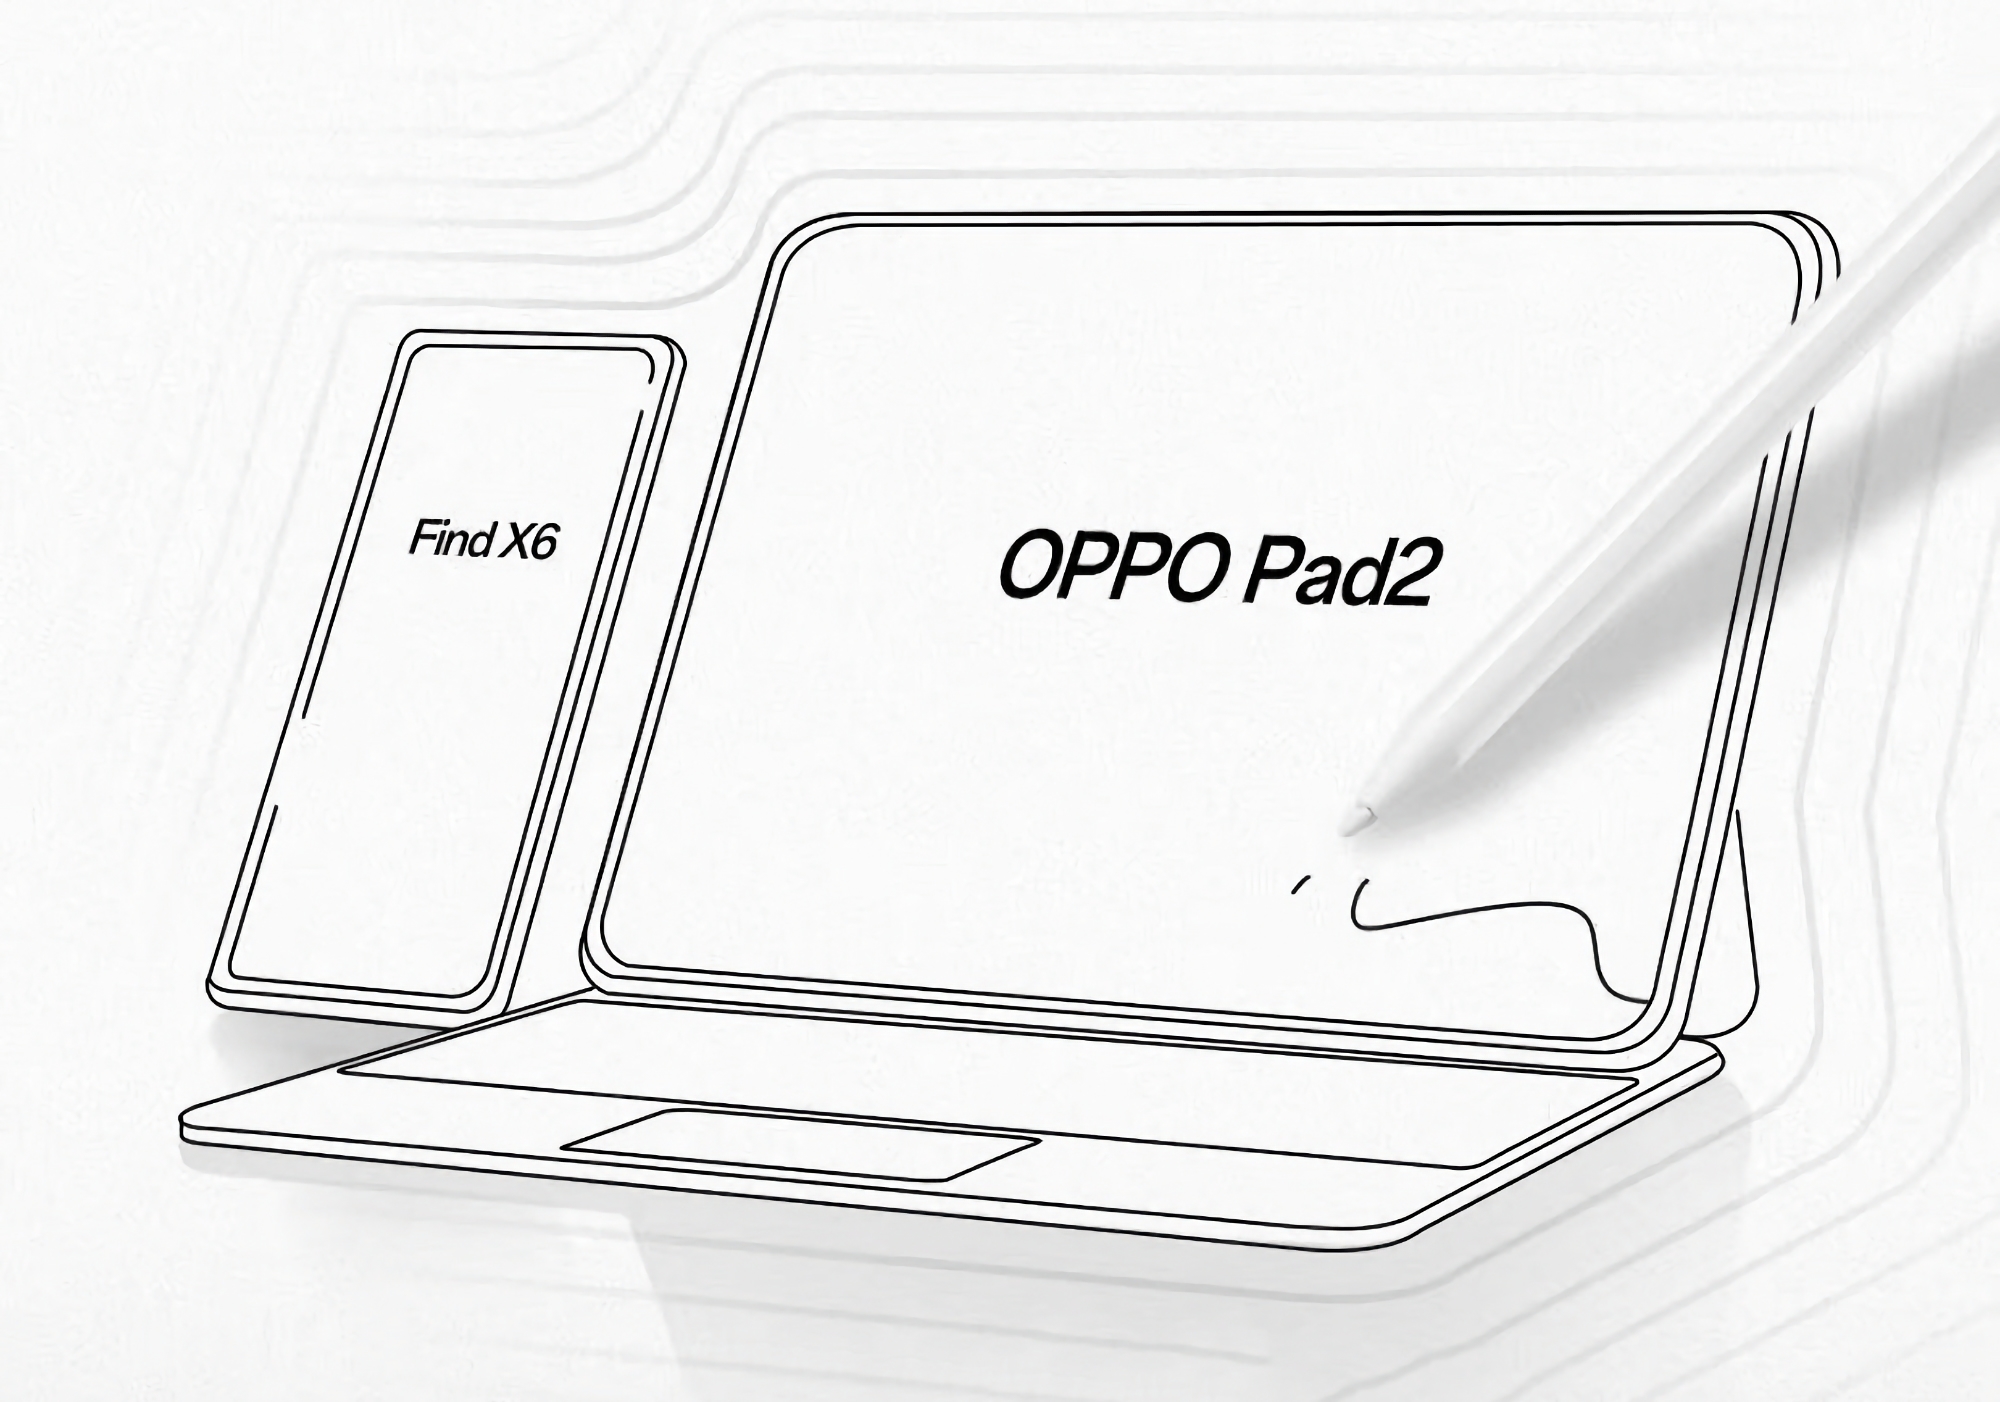 Un insider mostra l'aspetto del tablet OPPO Pad 2 con stilo e tastiera brandizzata